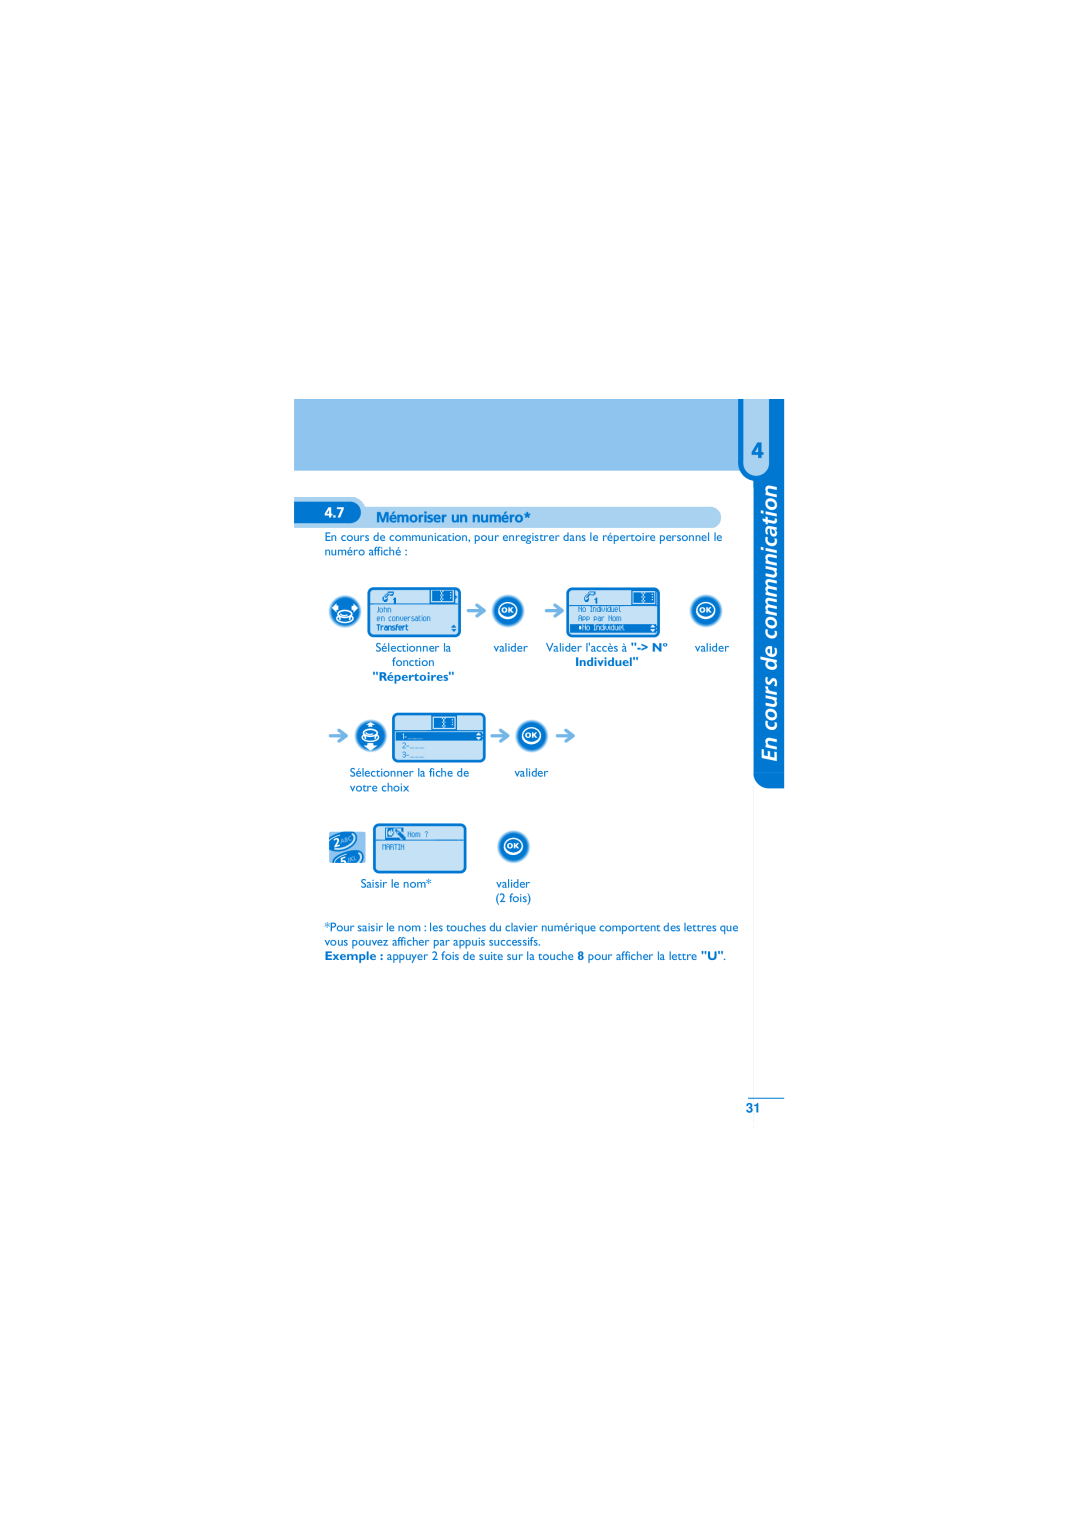 Alcatel-Lucent Mobile Reflexes 100 manual Mémoriser un numéro, En cours de communication, Répertoires 